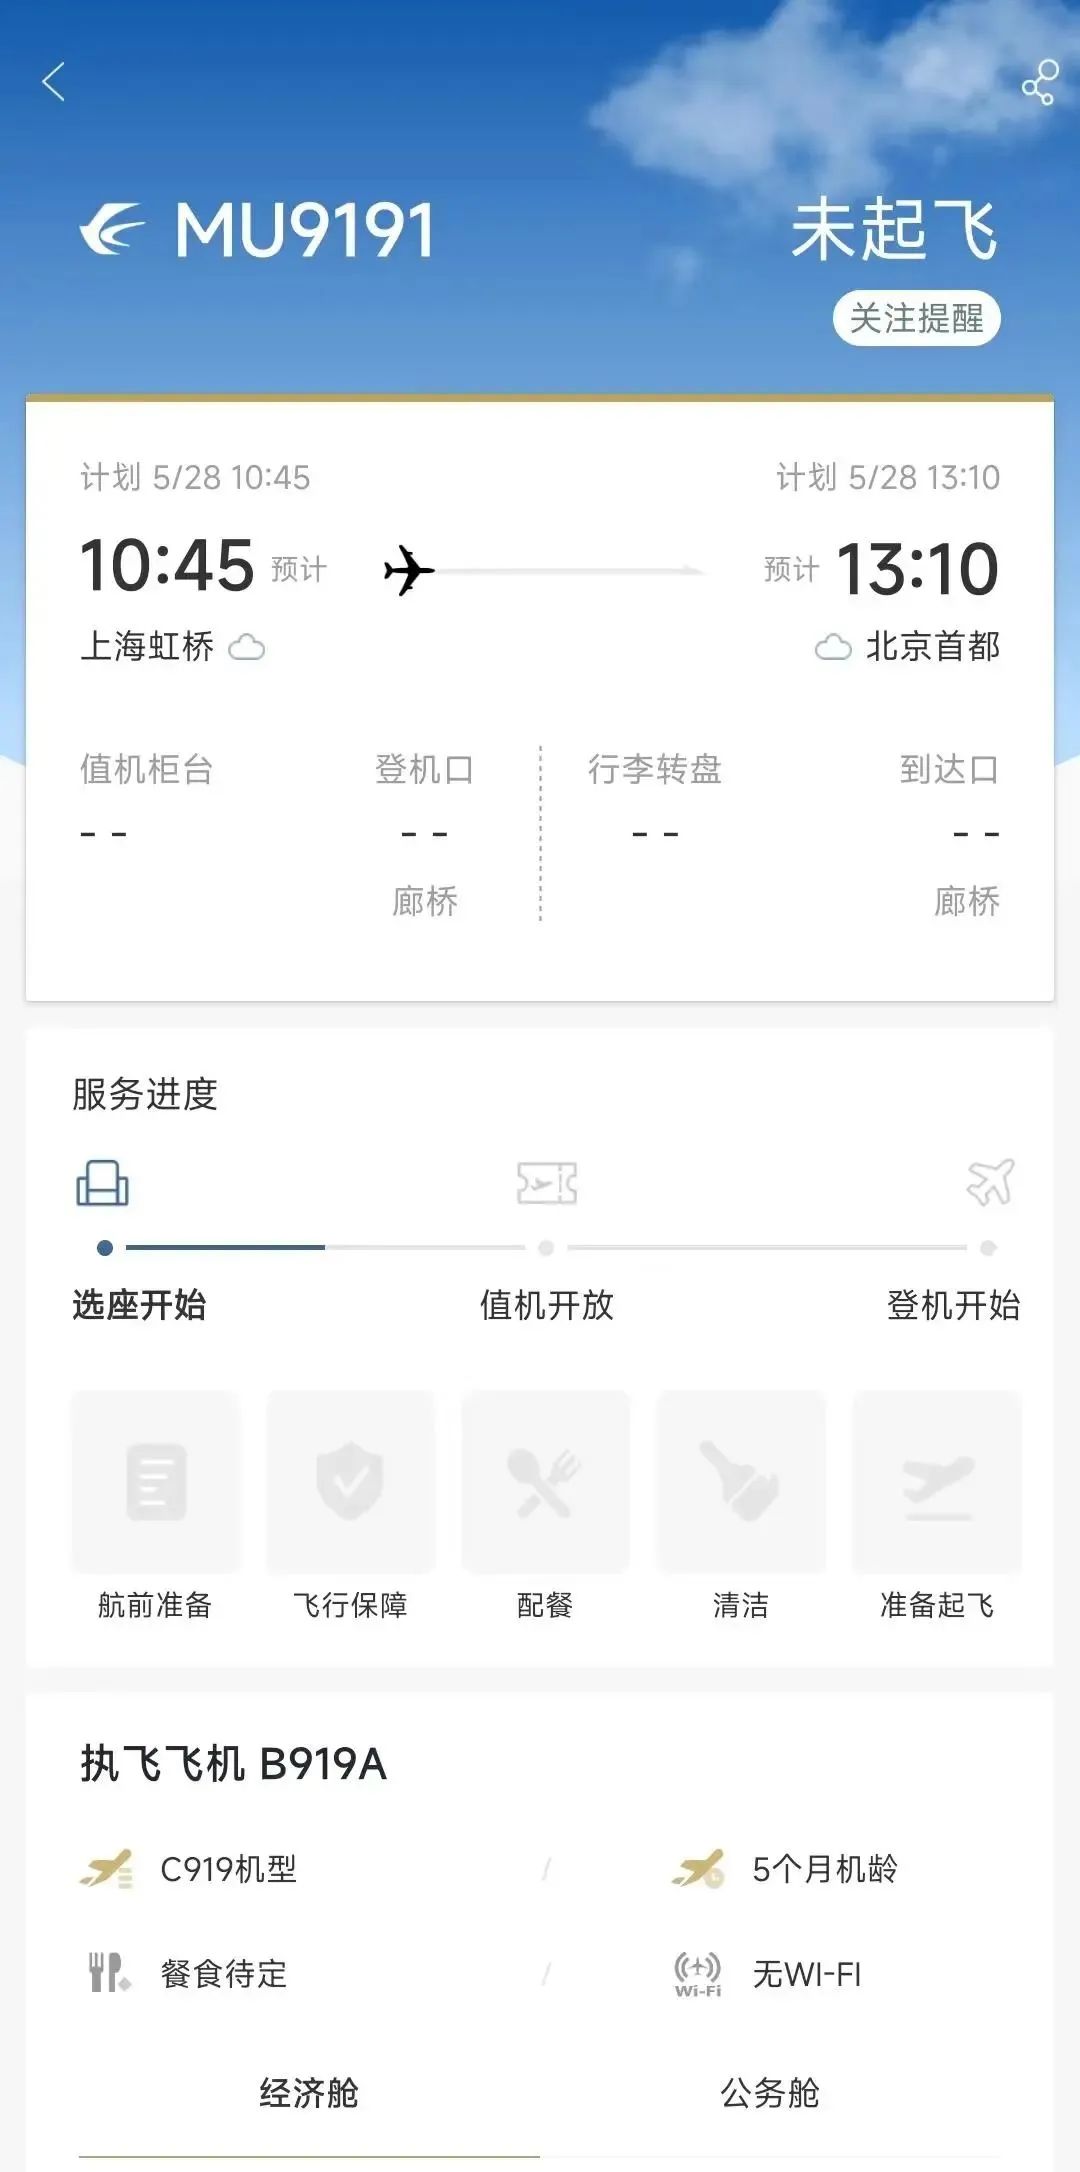 即将首航！上海飞北京！